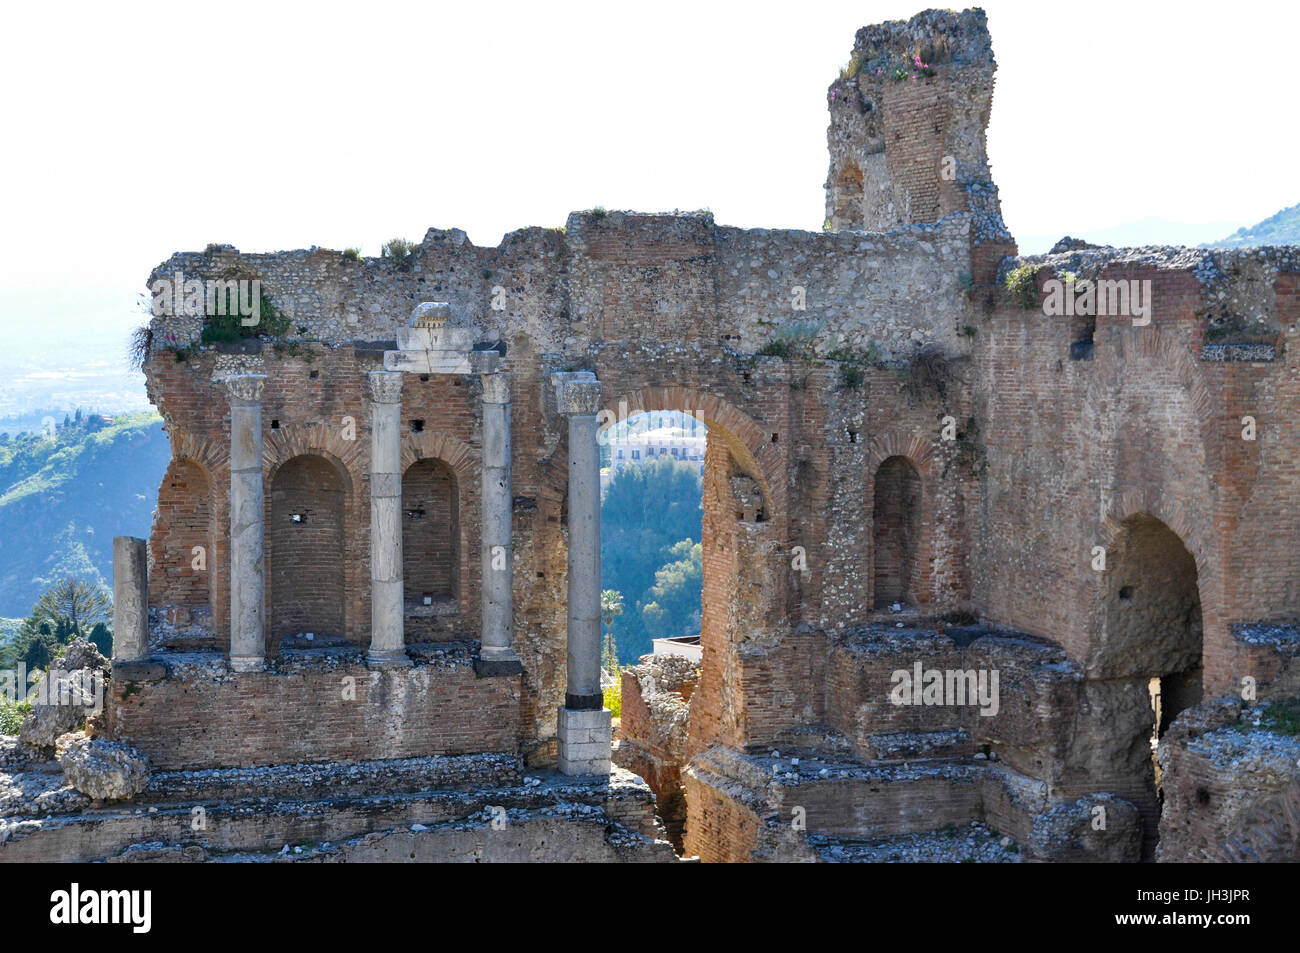 The Greco-Roman ruins of the Ancient Theatre of Taormina, Taormina, Sicily, Italy. Stock Photo